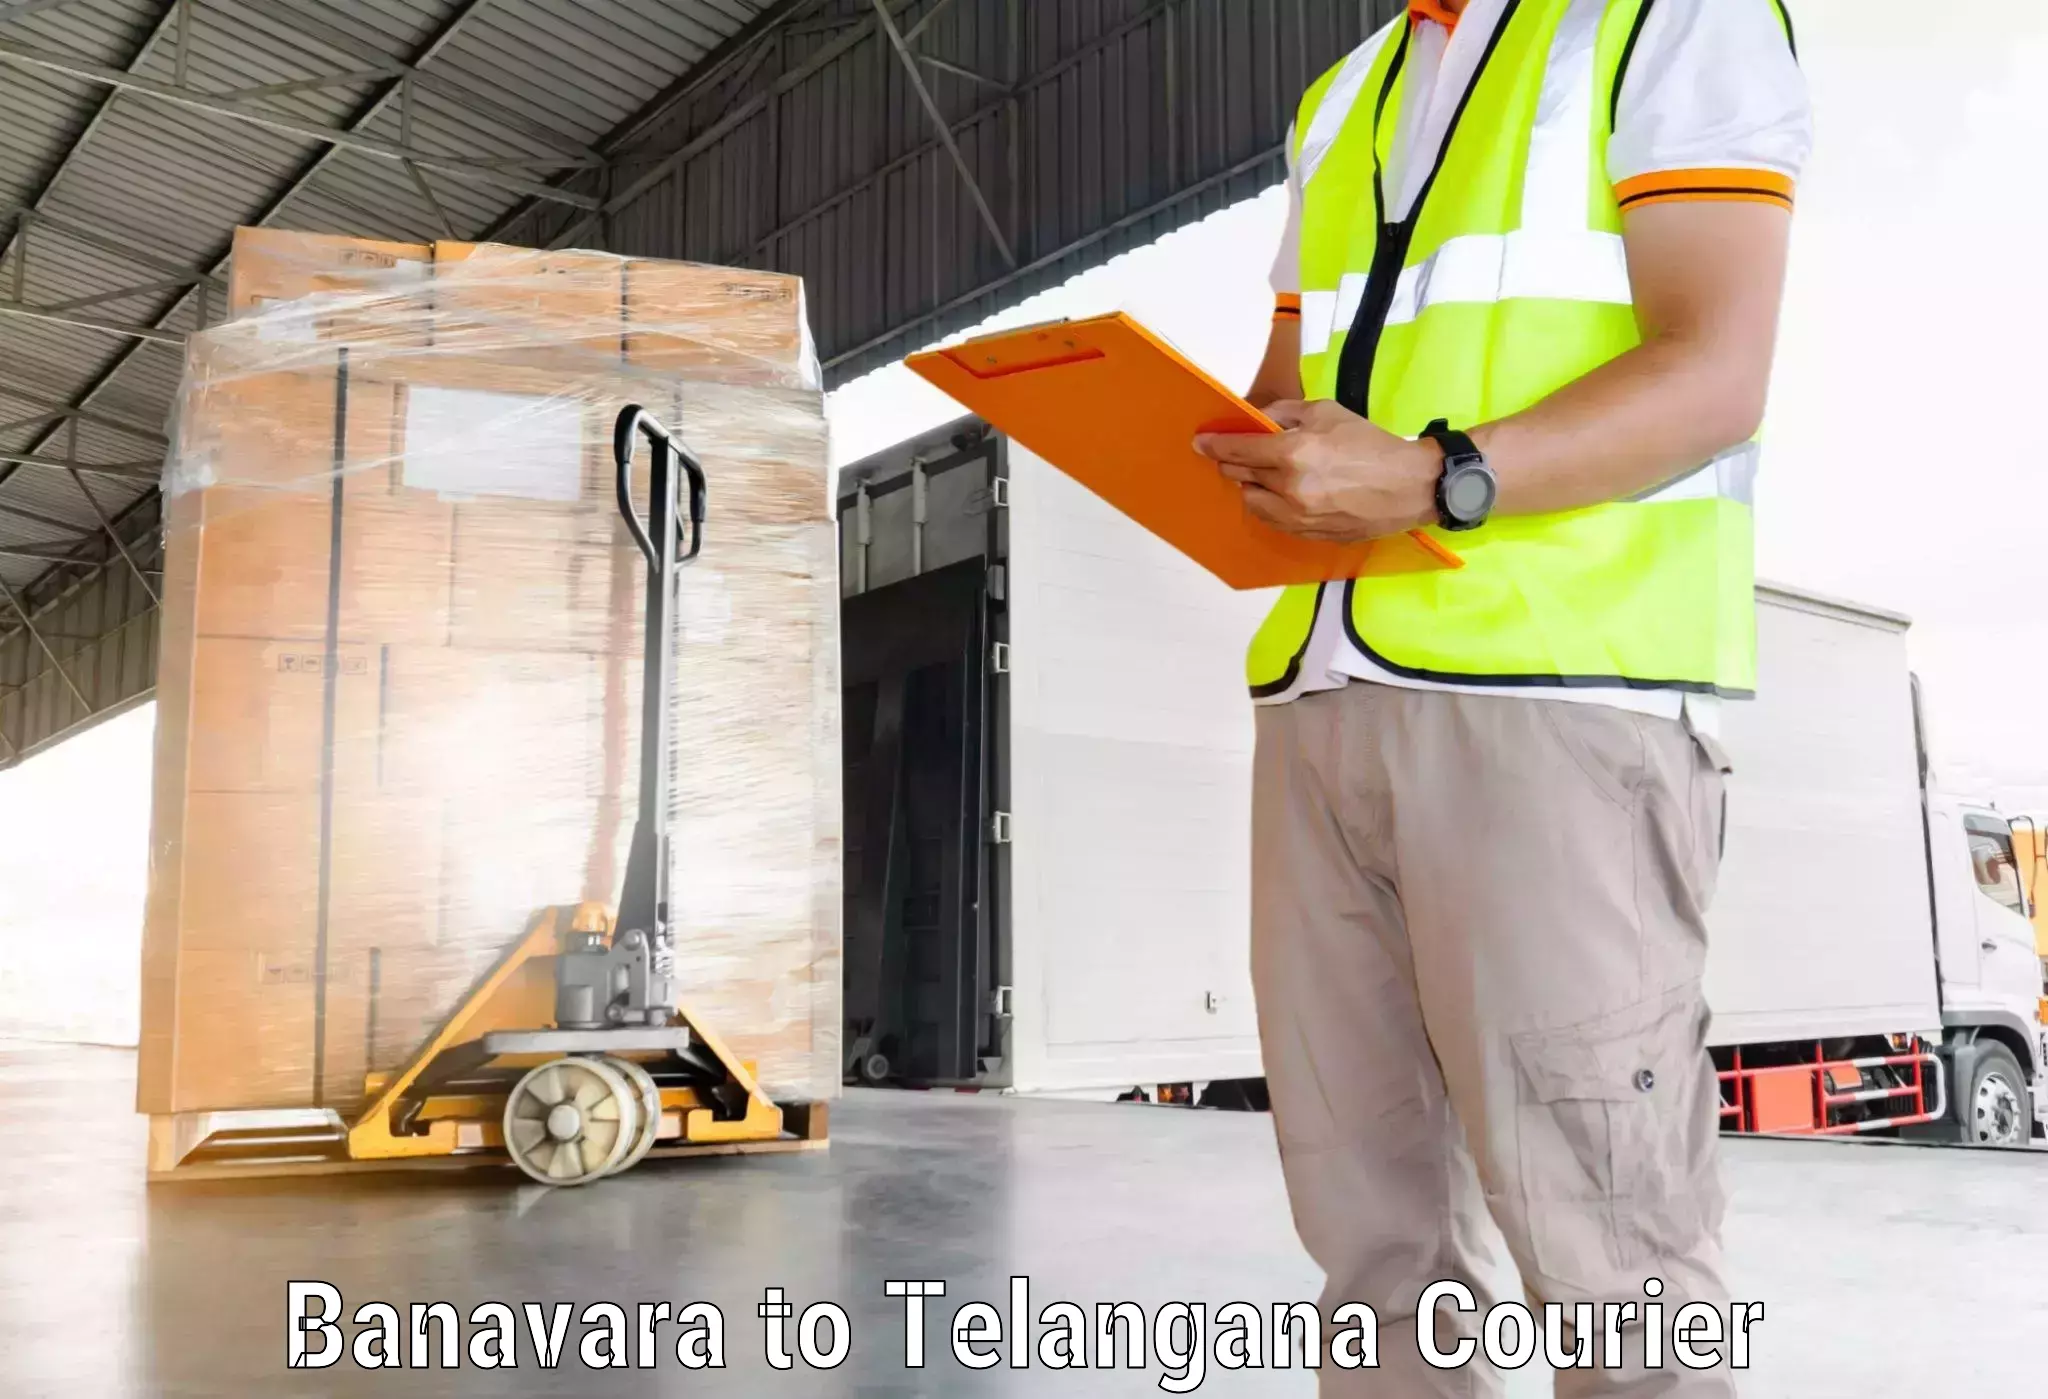 Express logistics providers Banavara to Vemulawada